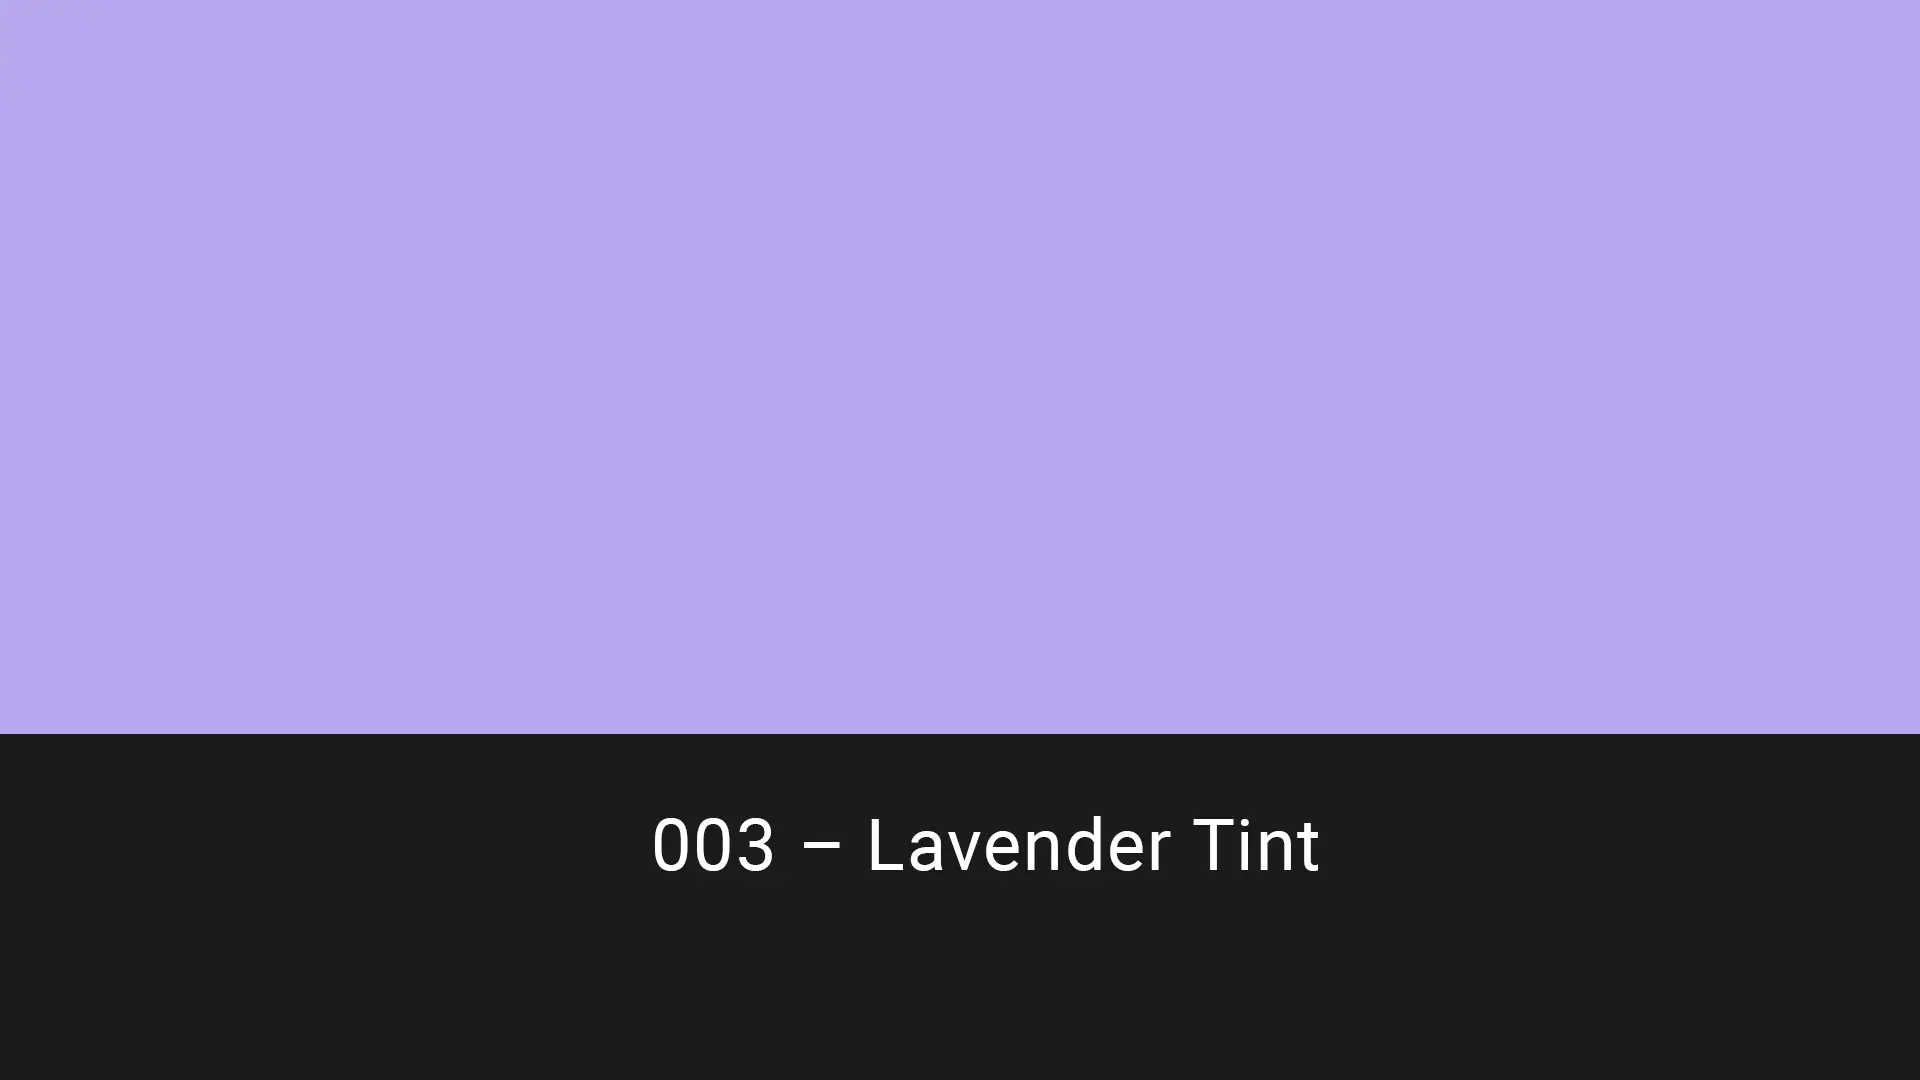 Cotech filters 003 Lavender Tint